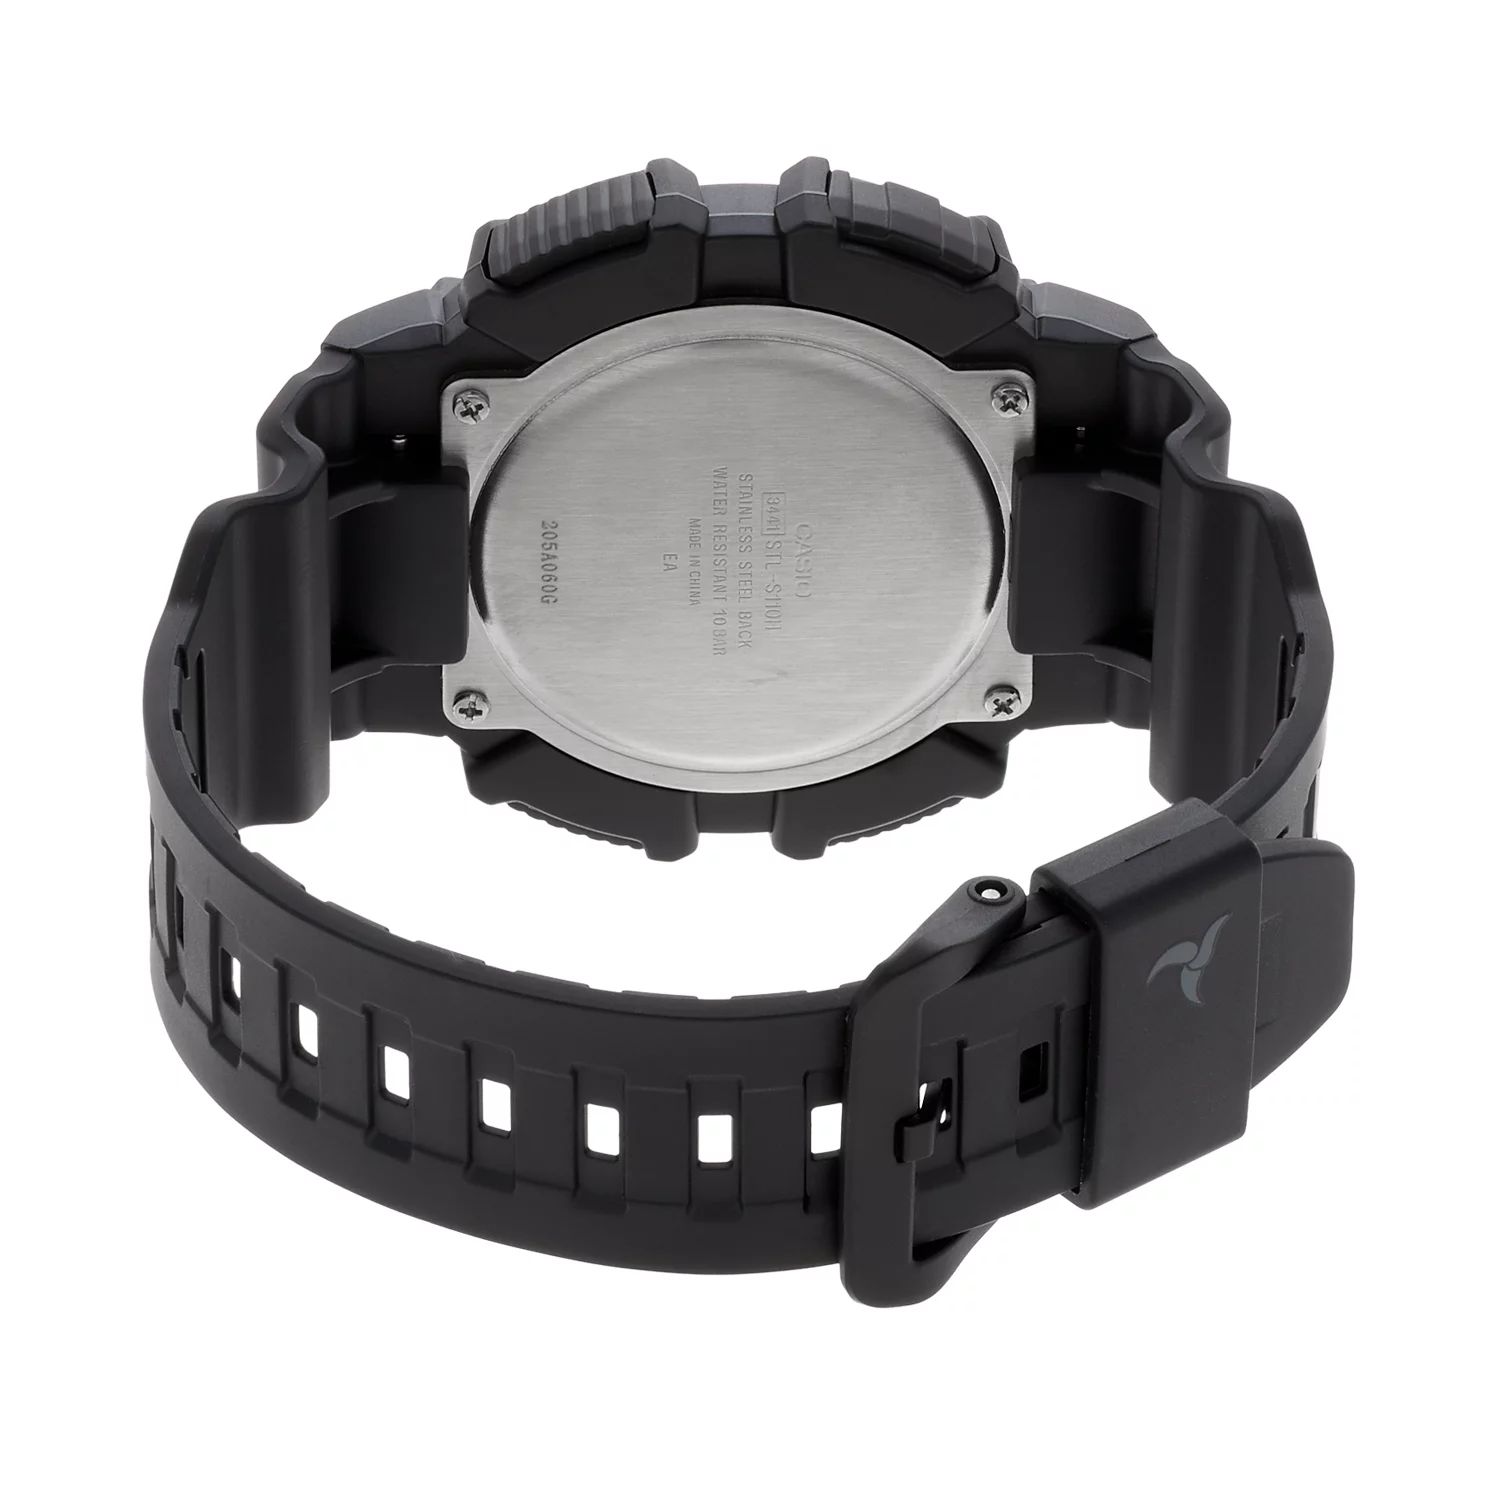 Мужские часы Tough Solar с цифровым хронографом — STLS110H-1B2 Casio цена и фото